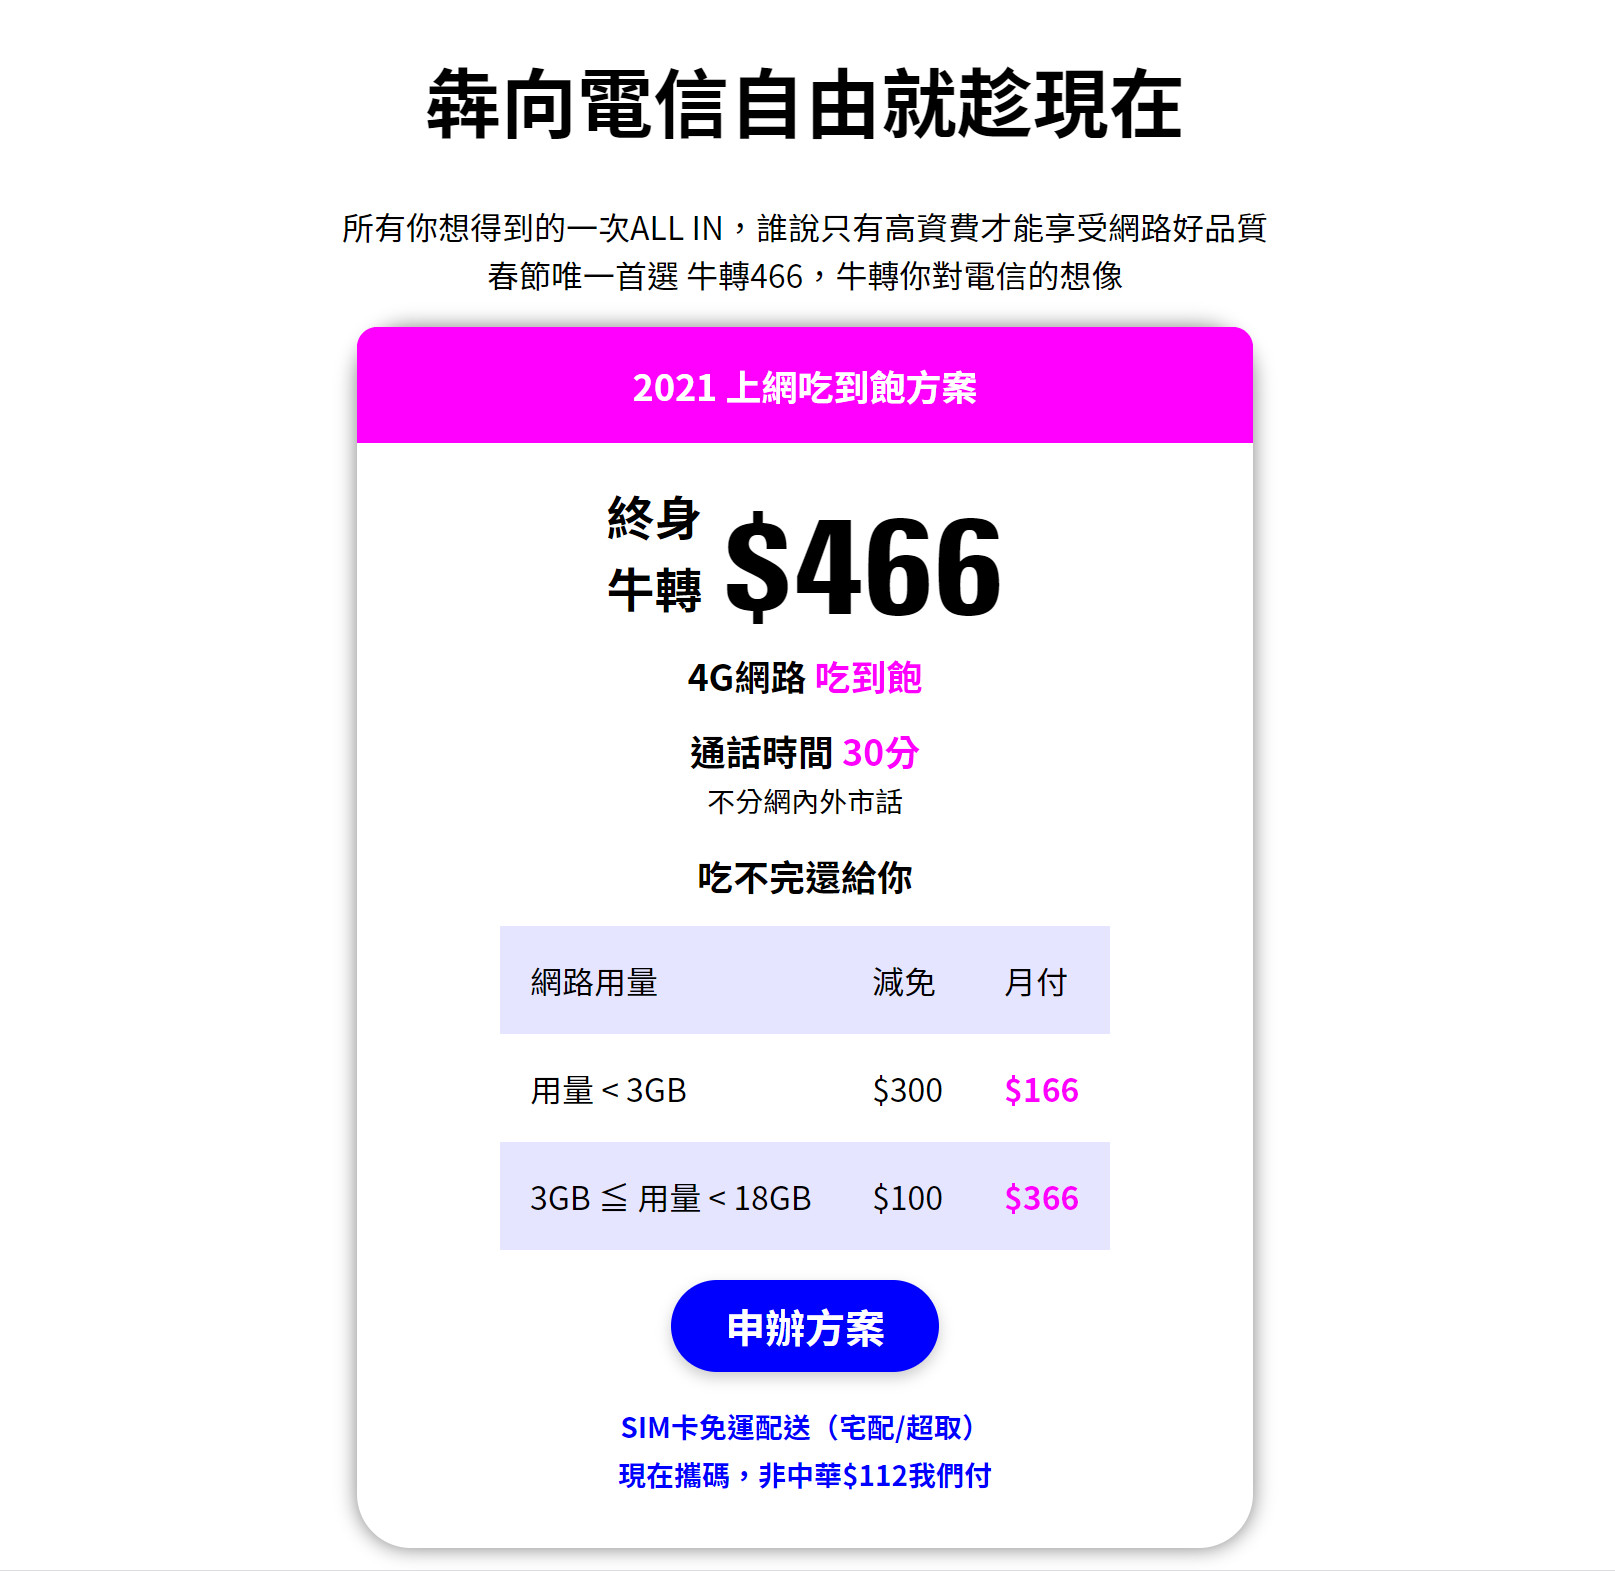 【無框行動】新春專案，中華電信大4G網路吃到飽466元，低流量只要166元!超適合搭配台灣之星雙11專案。 - 無框行動評價 - 敗家達人推薦